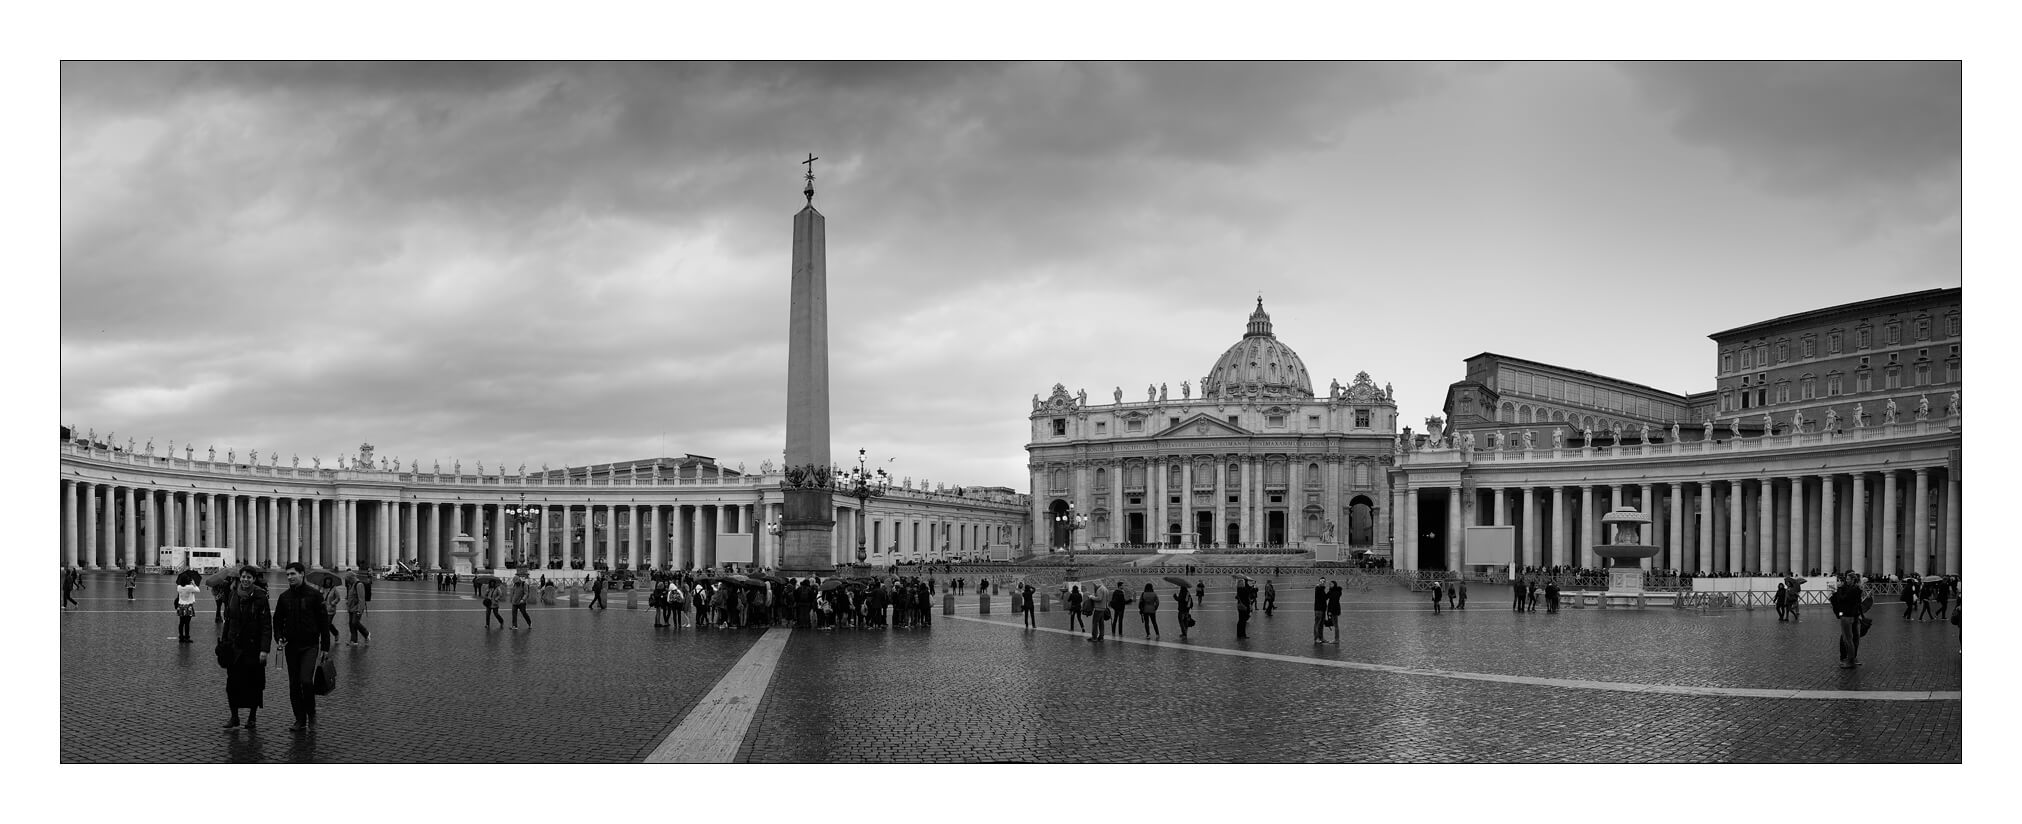 La place du vatican en panorama